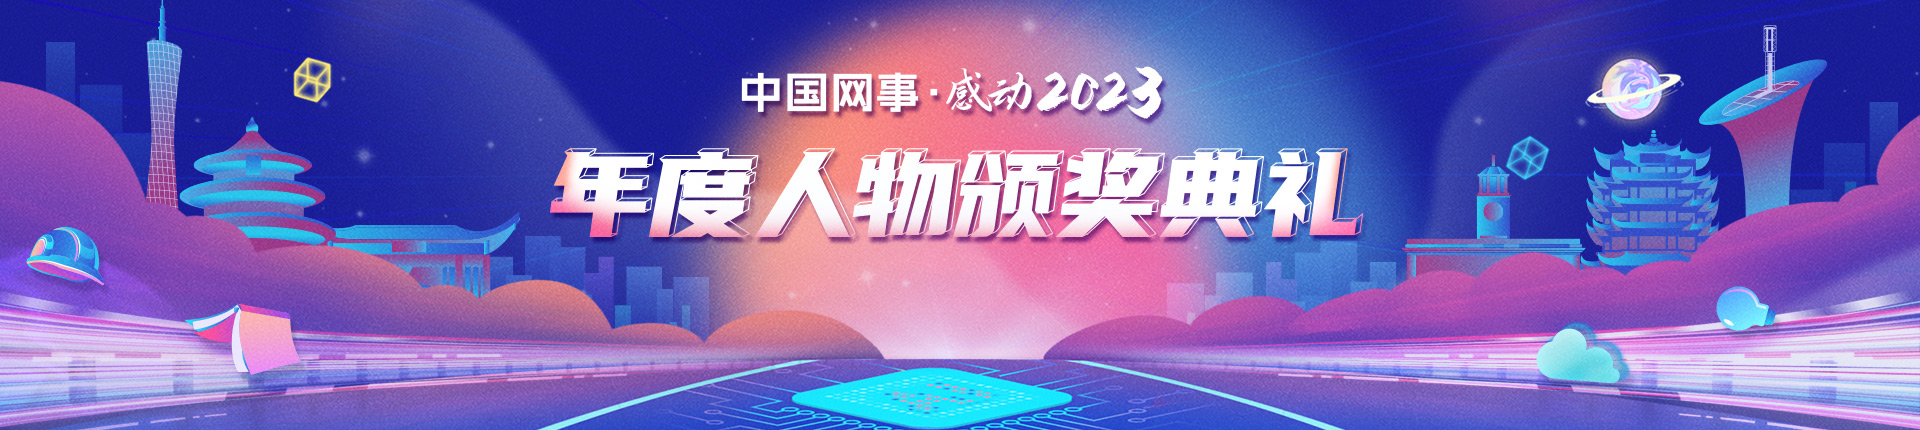 “中國網事·感動2023”十大年度網絡人物揭曉